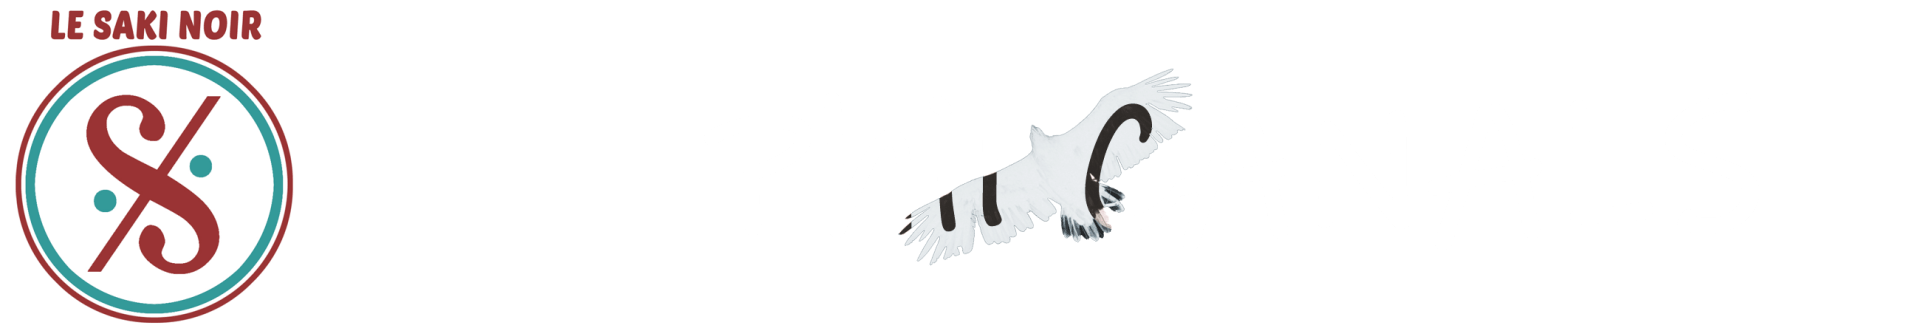 Phil Canals Philippe Canals Artiste Musicien Saxophoniste Musiques improvisée Spiritualité Ethnomusicologie